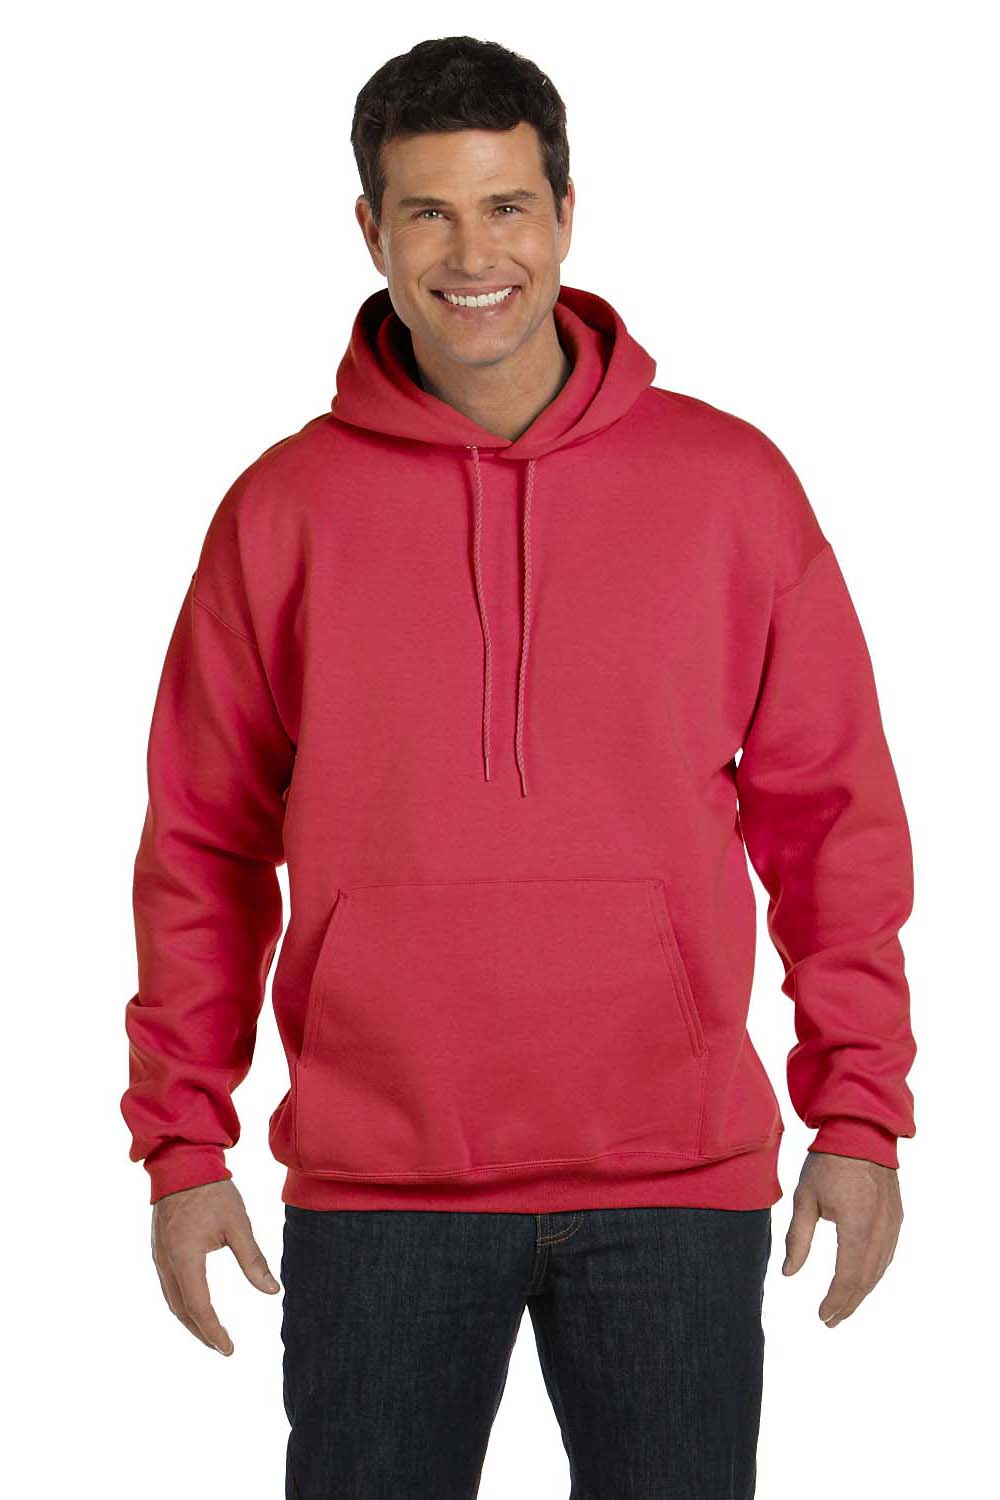 Hanes F170 Mens Ultimate Cotton PrintPro XP Hooded Sweatshirt Hoodie Red Front